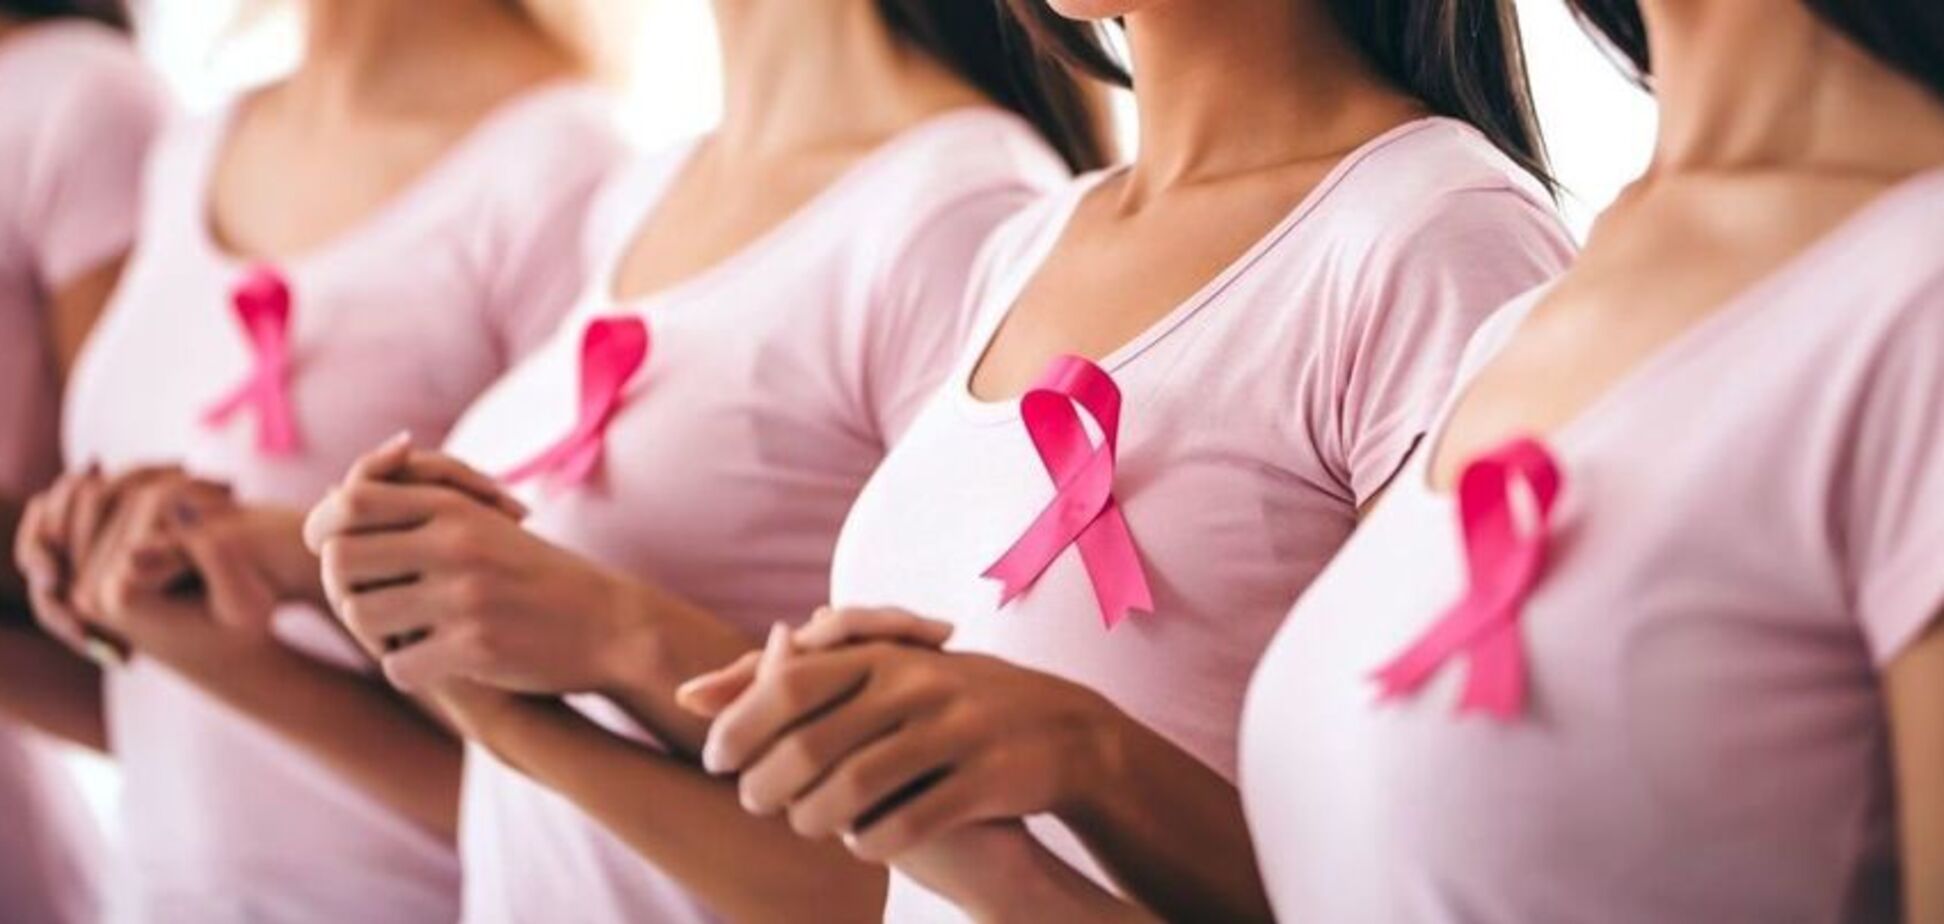 Узелки и покраснения: врач назвал признаки рака груди